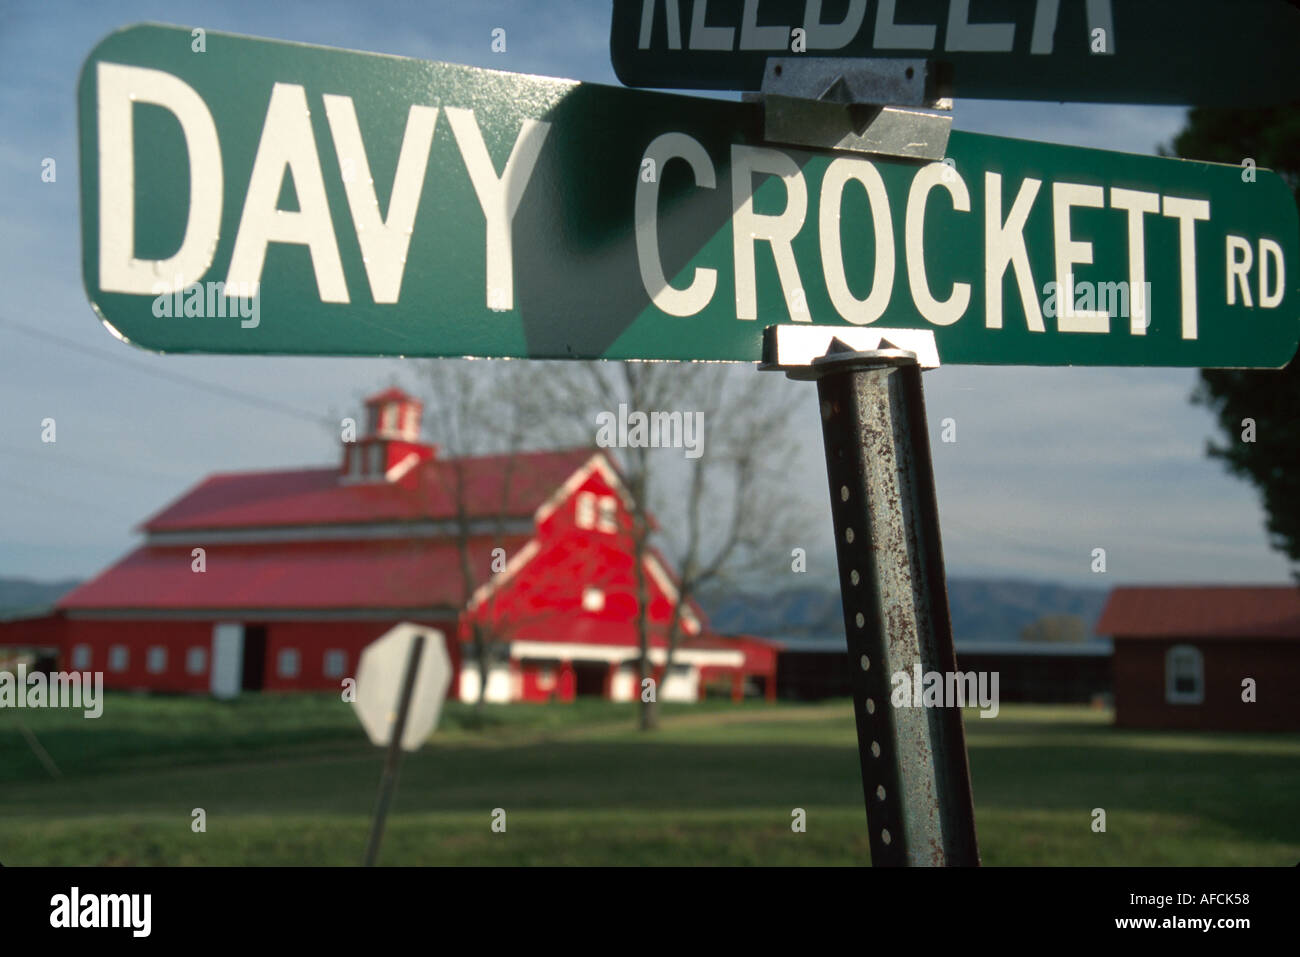 Tennessee Limestone Davy Crockett Road près du lieu de naissance, personne célèbre importante, cabane rouge grange, bâtiment, agriculture, stockage, TN008, TN008 Banque D'Images